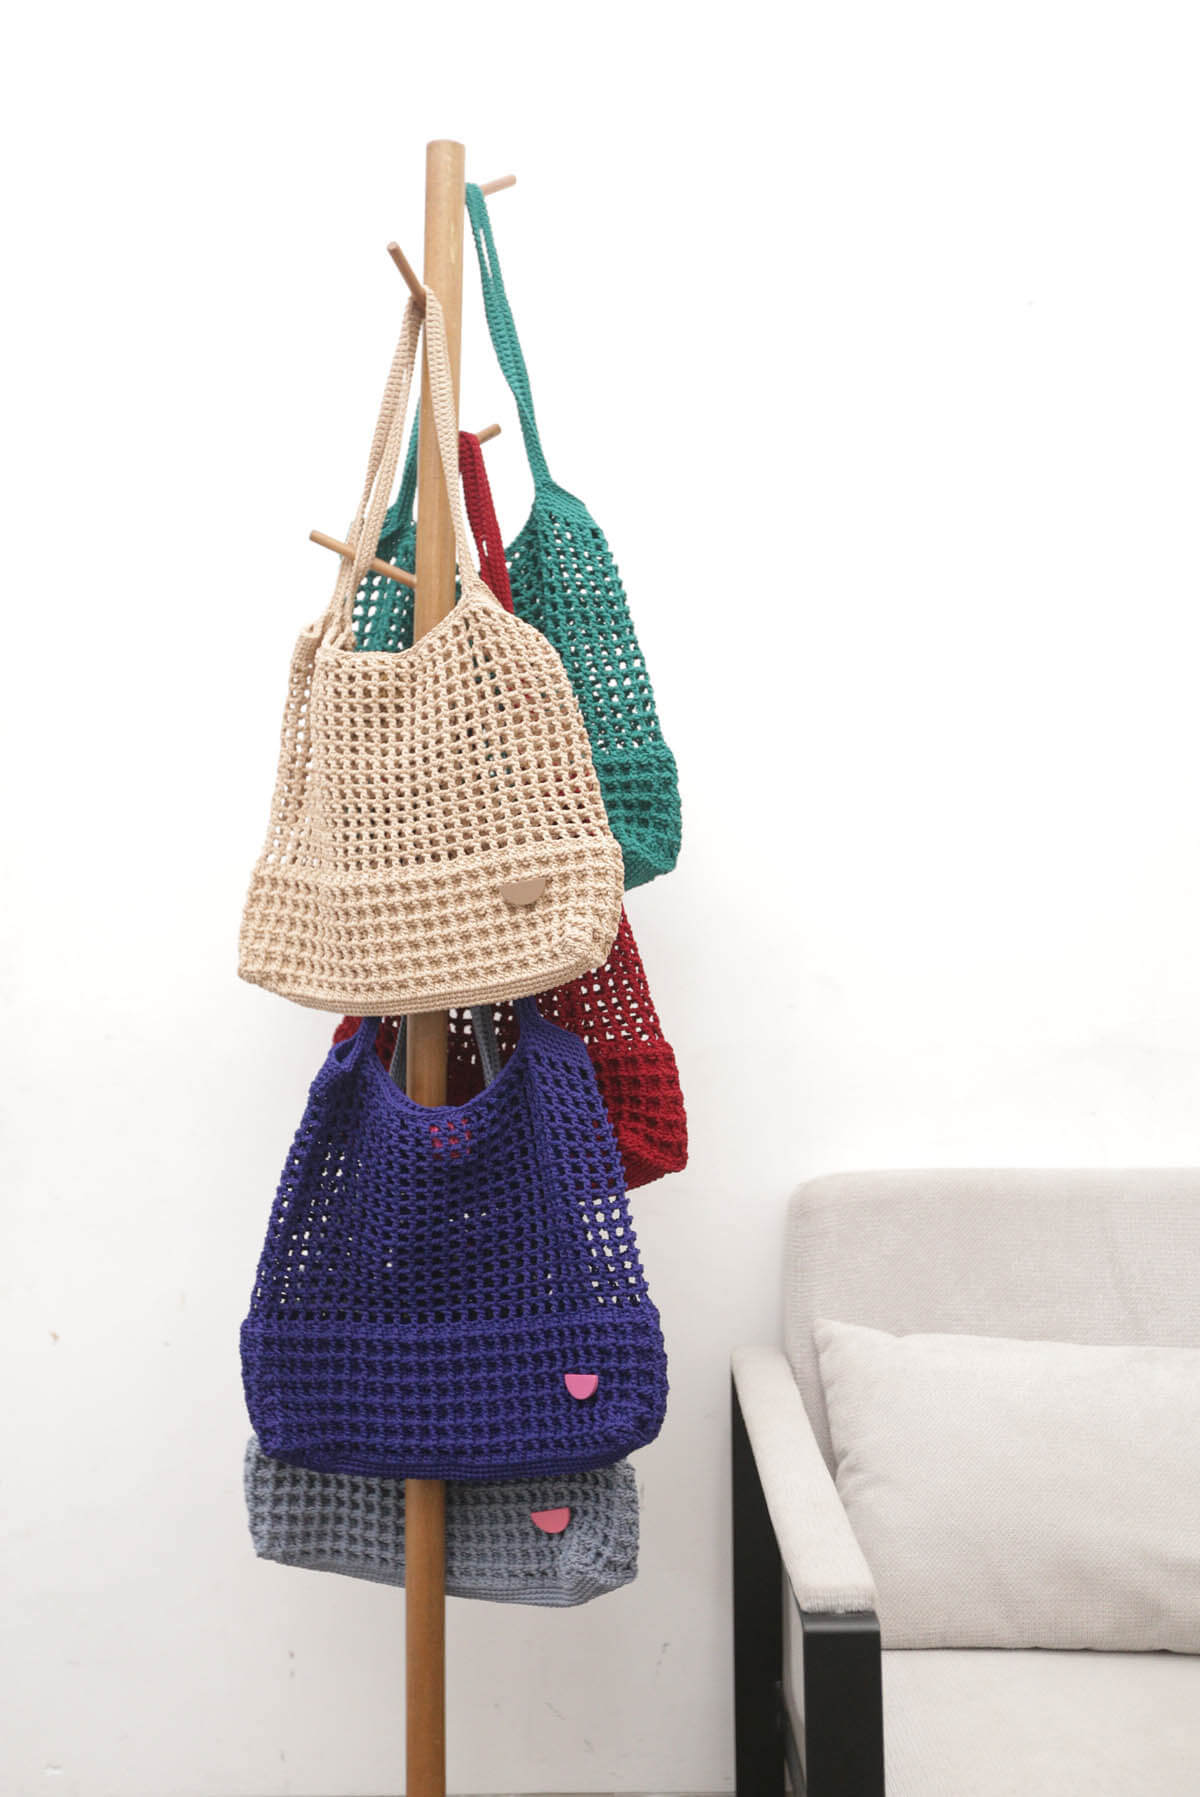 Halv Crochet Oat Bag